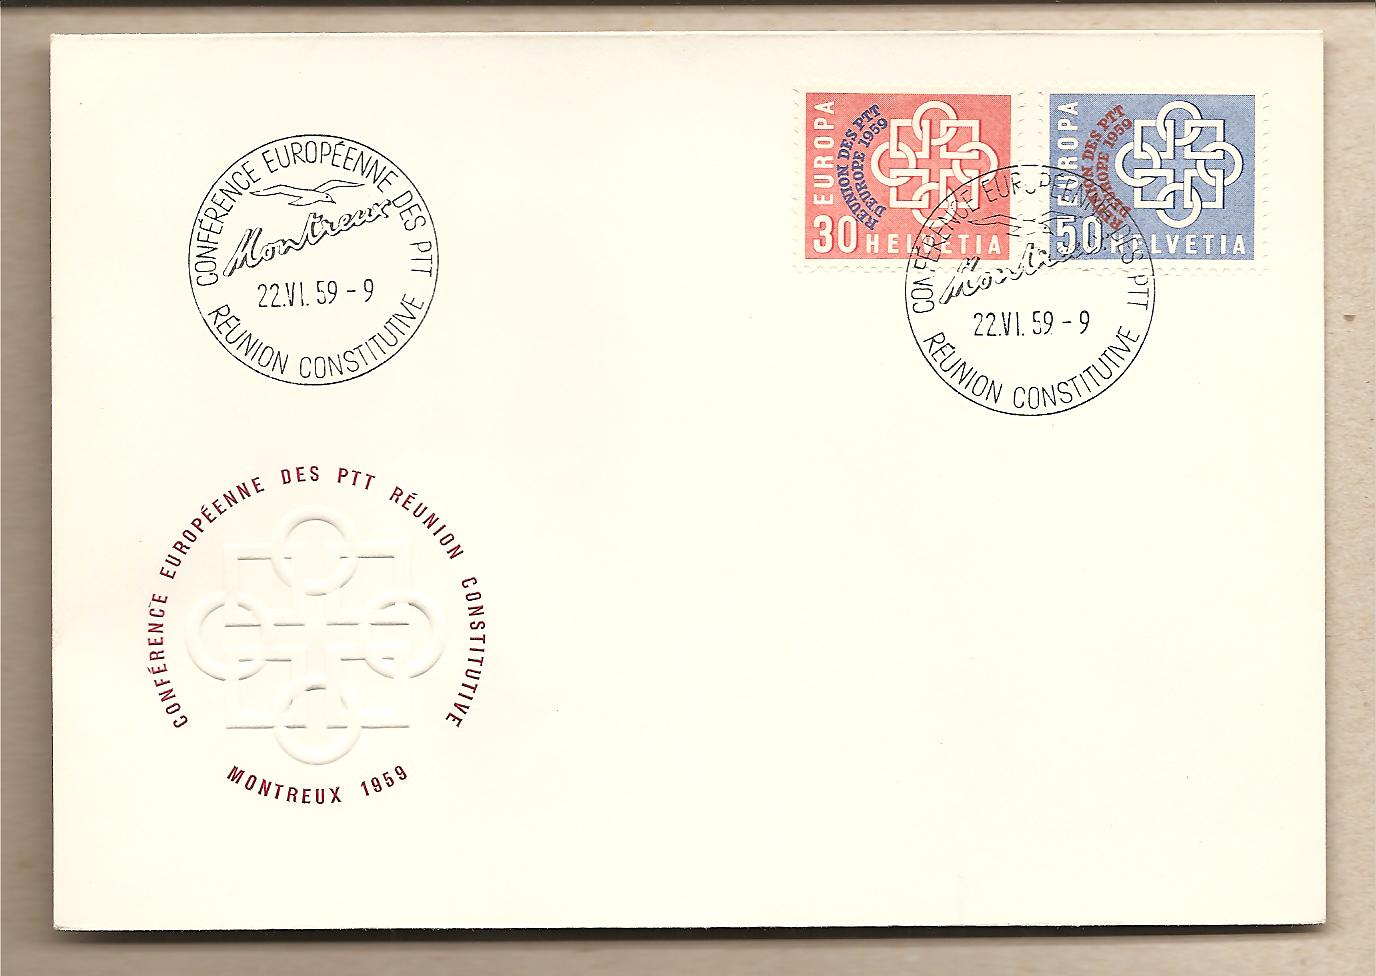 36097 - Svizzera - buste FDC con serie completa ed annullo speciale: Assemblea delle amministrazioni postali europee - 1959 * G